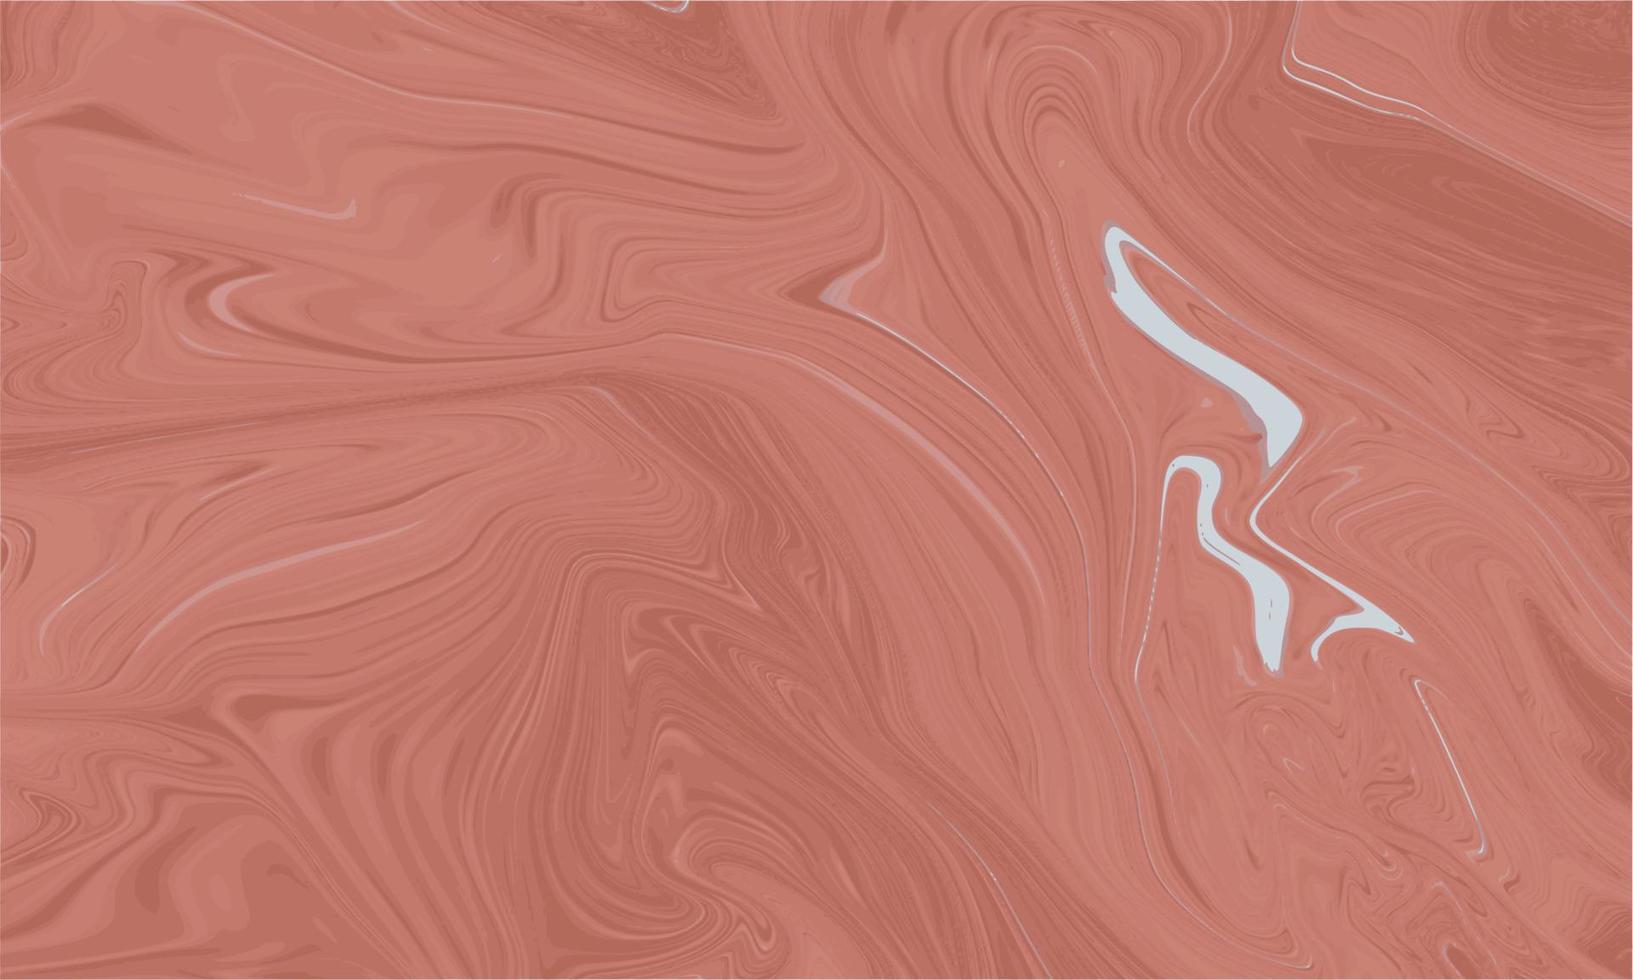 abstracte roze vloeibare marmeren achtergrond vector